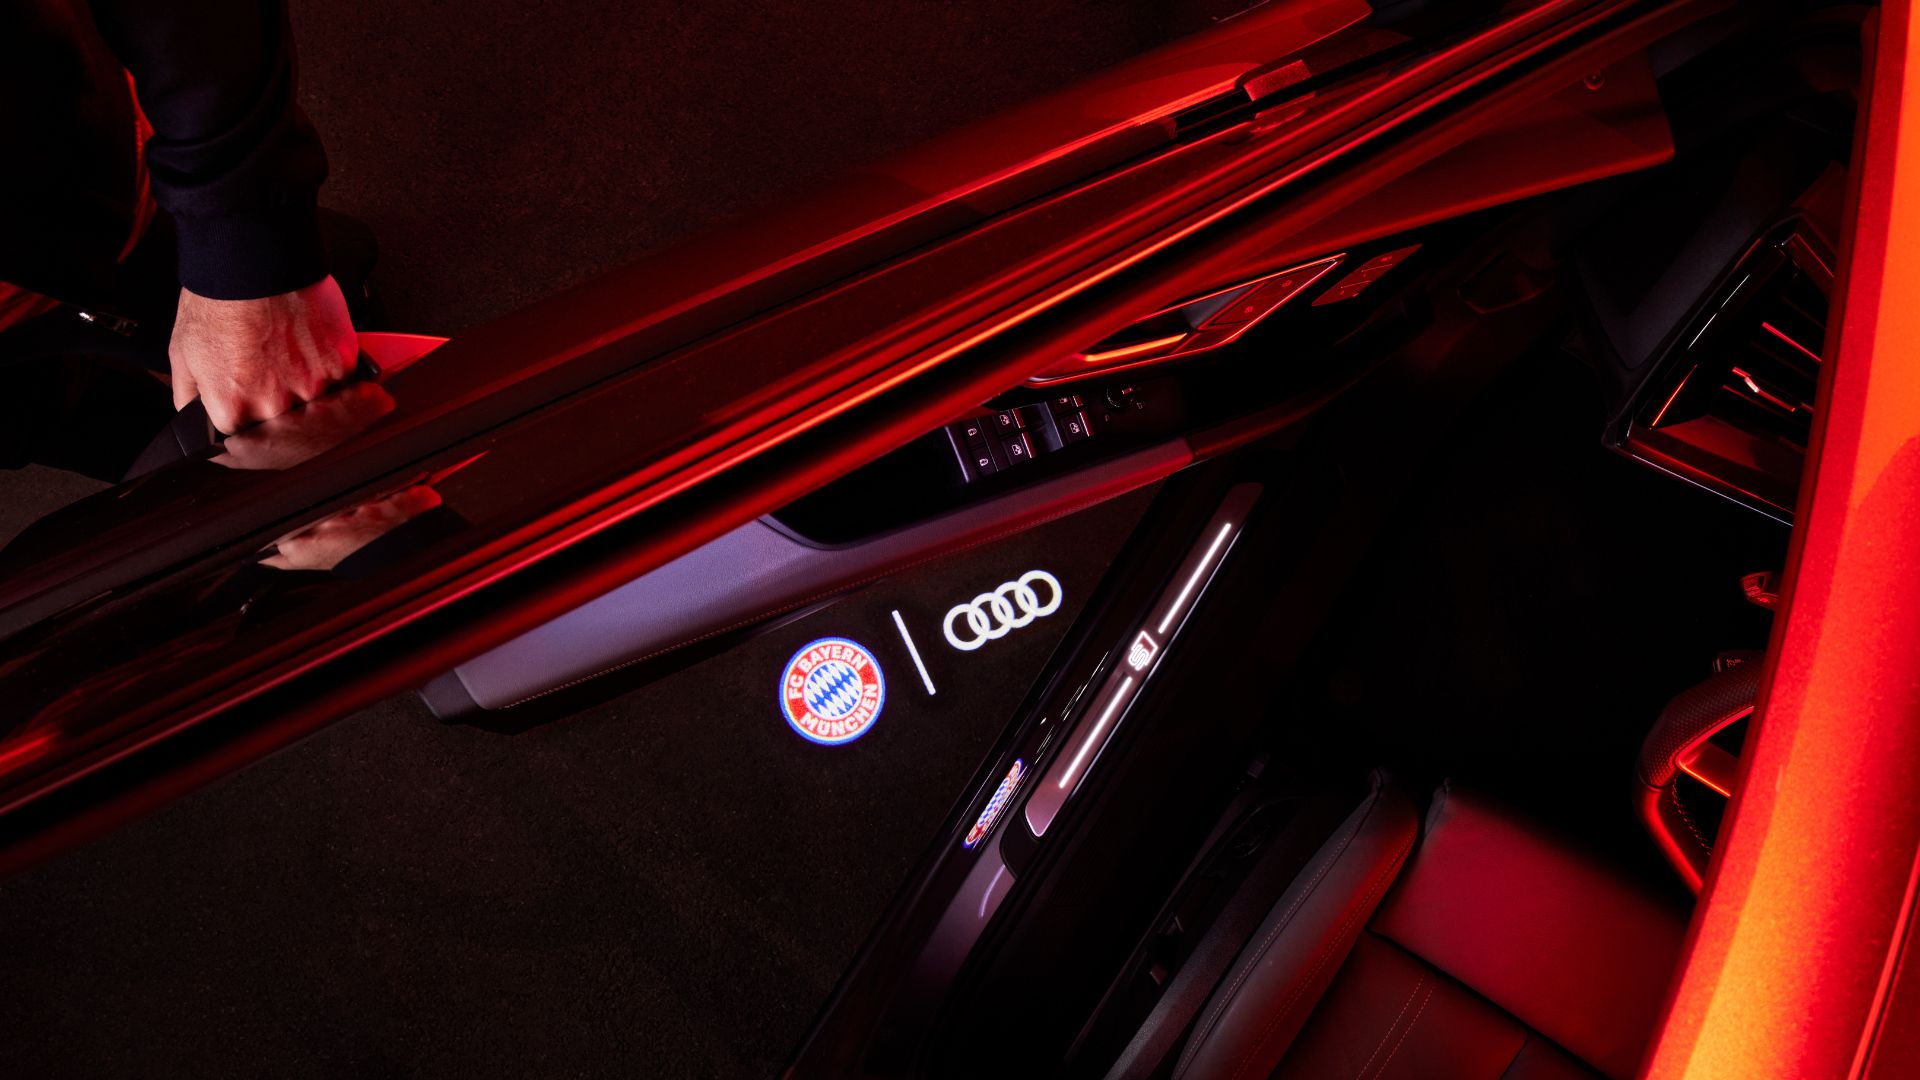 Einstiegs-LED Logo FC Bayern München und Audi Ringe, für Fahrzeuge mit LED- Einstiegsleuchten > Shopping World Luxemburg